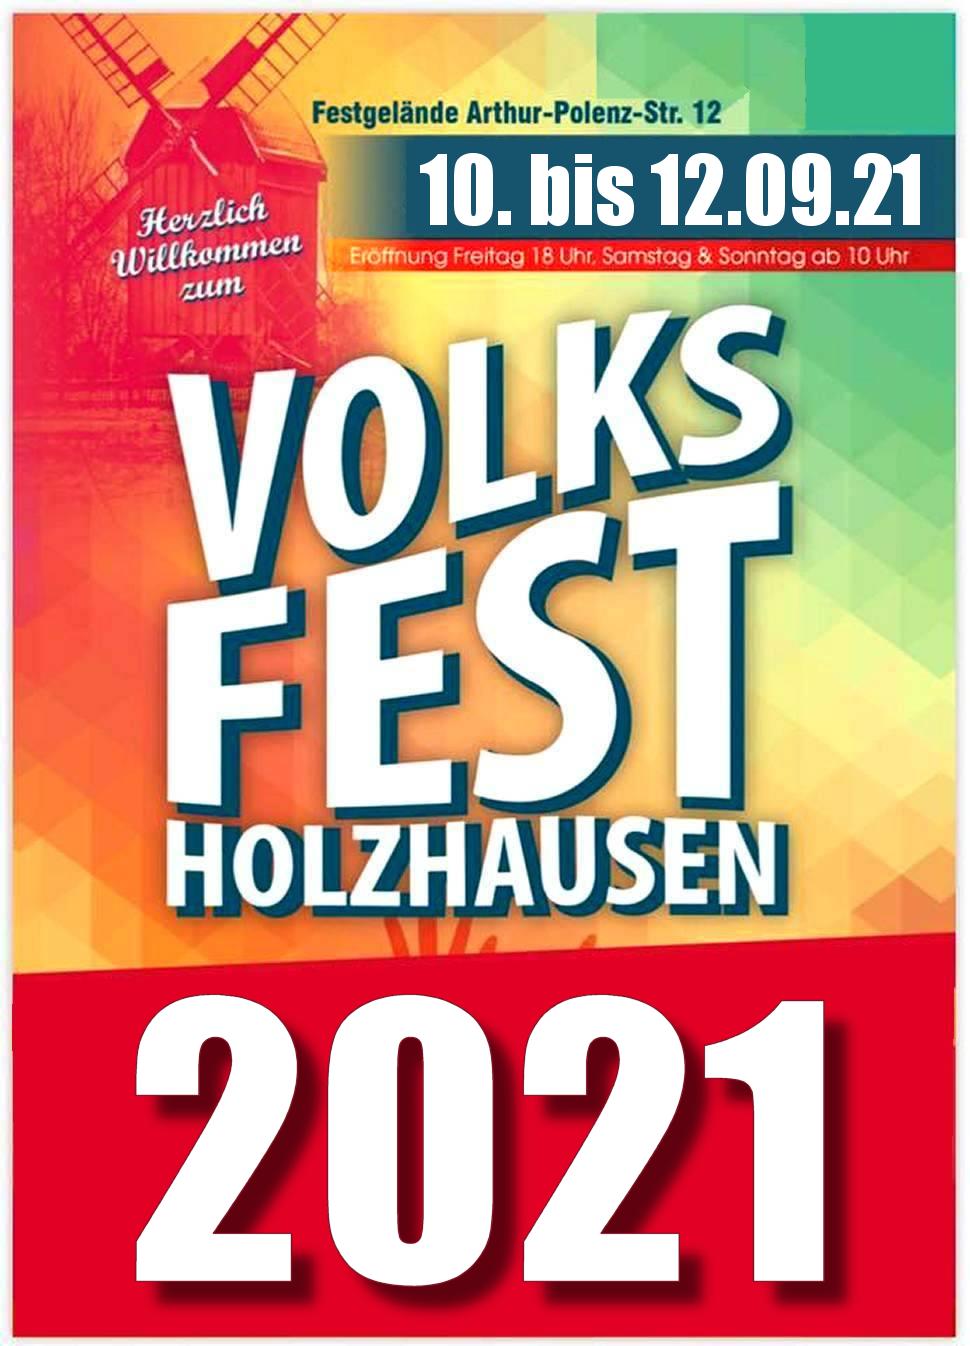 volksfest-holzhausen-veranstaltungsplan 2021